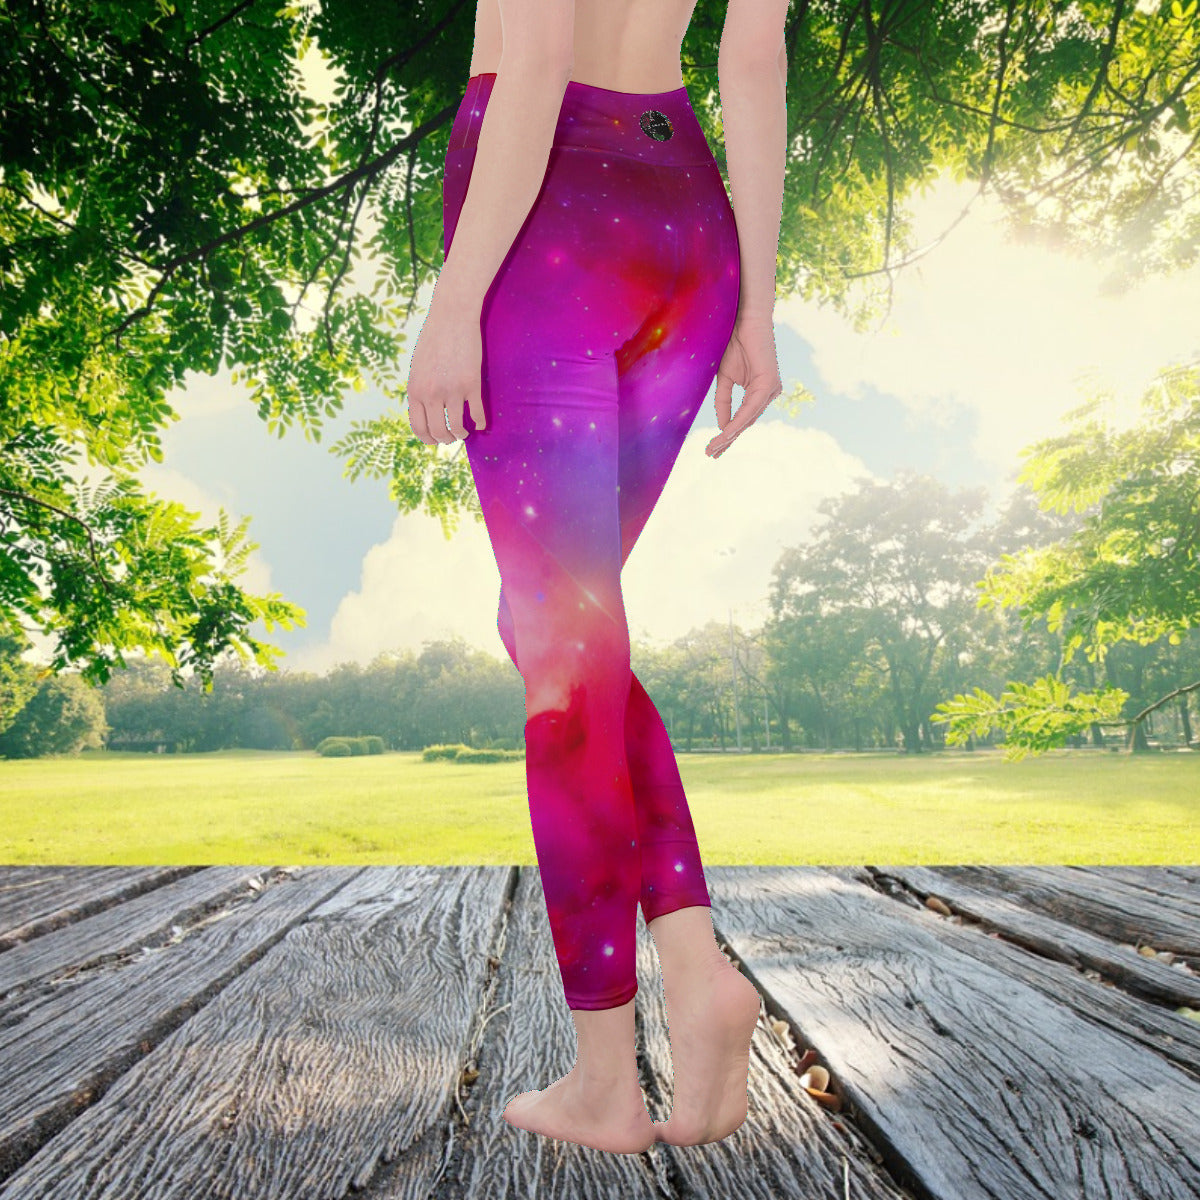 Red Nebula Galaxy Space Women's Fashion Leggings - The Nebula Palace